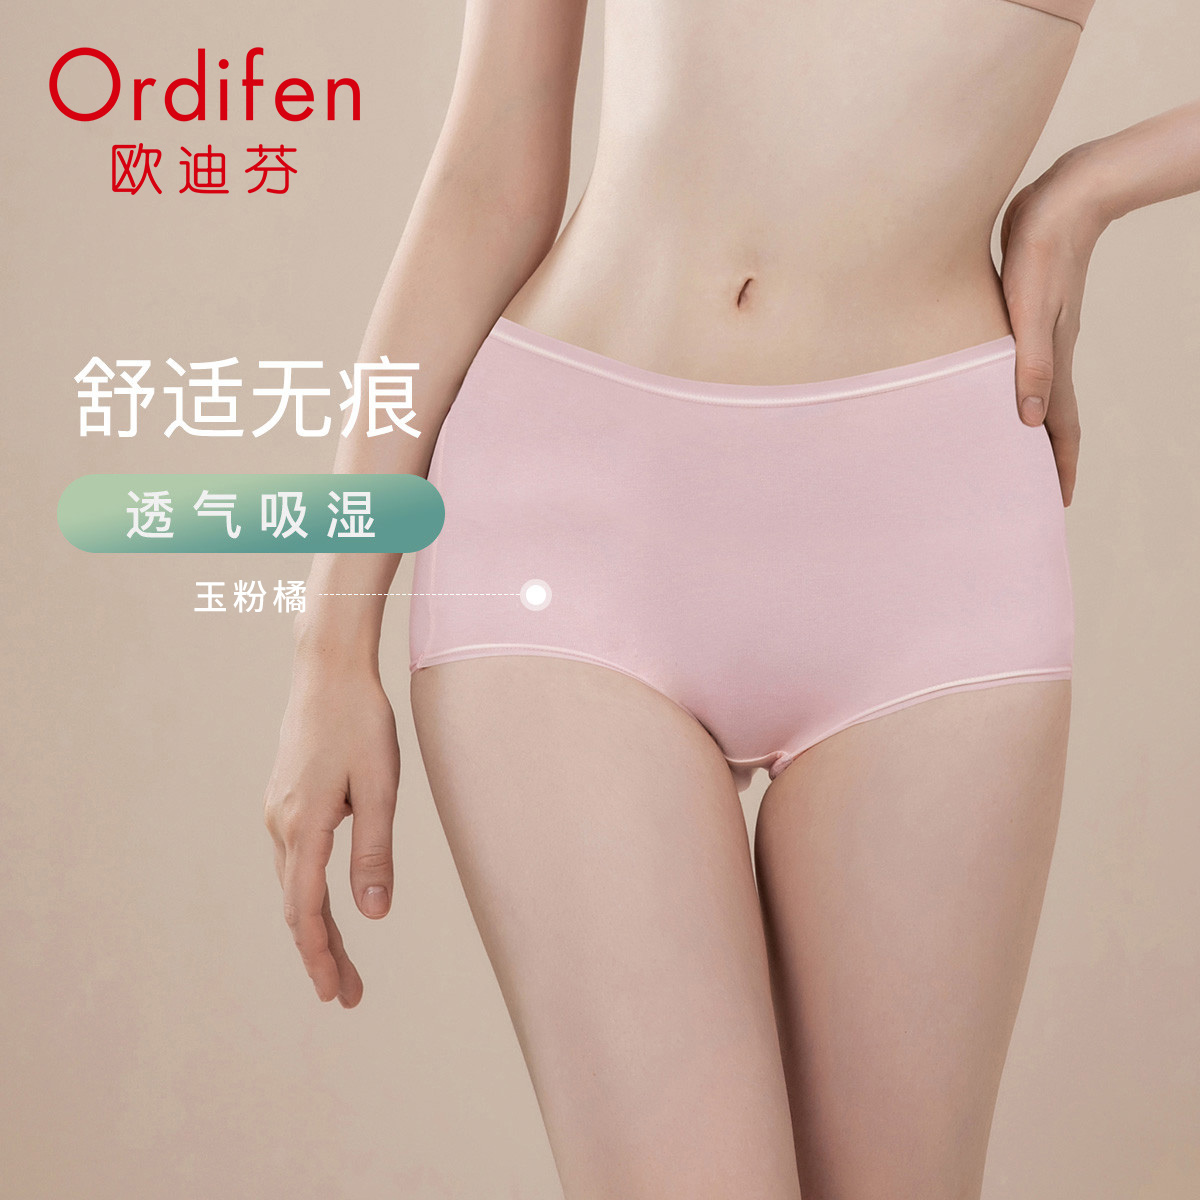 欧迪芬女式内裤——自信魅力从穿着开始